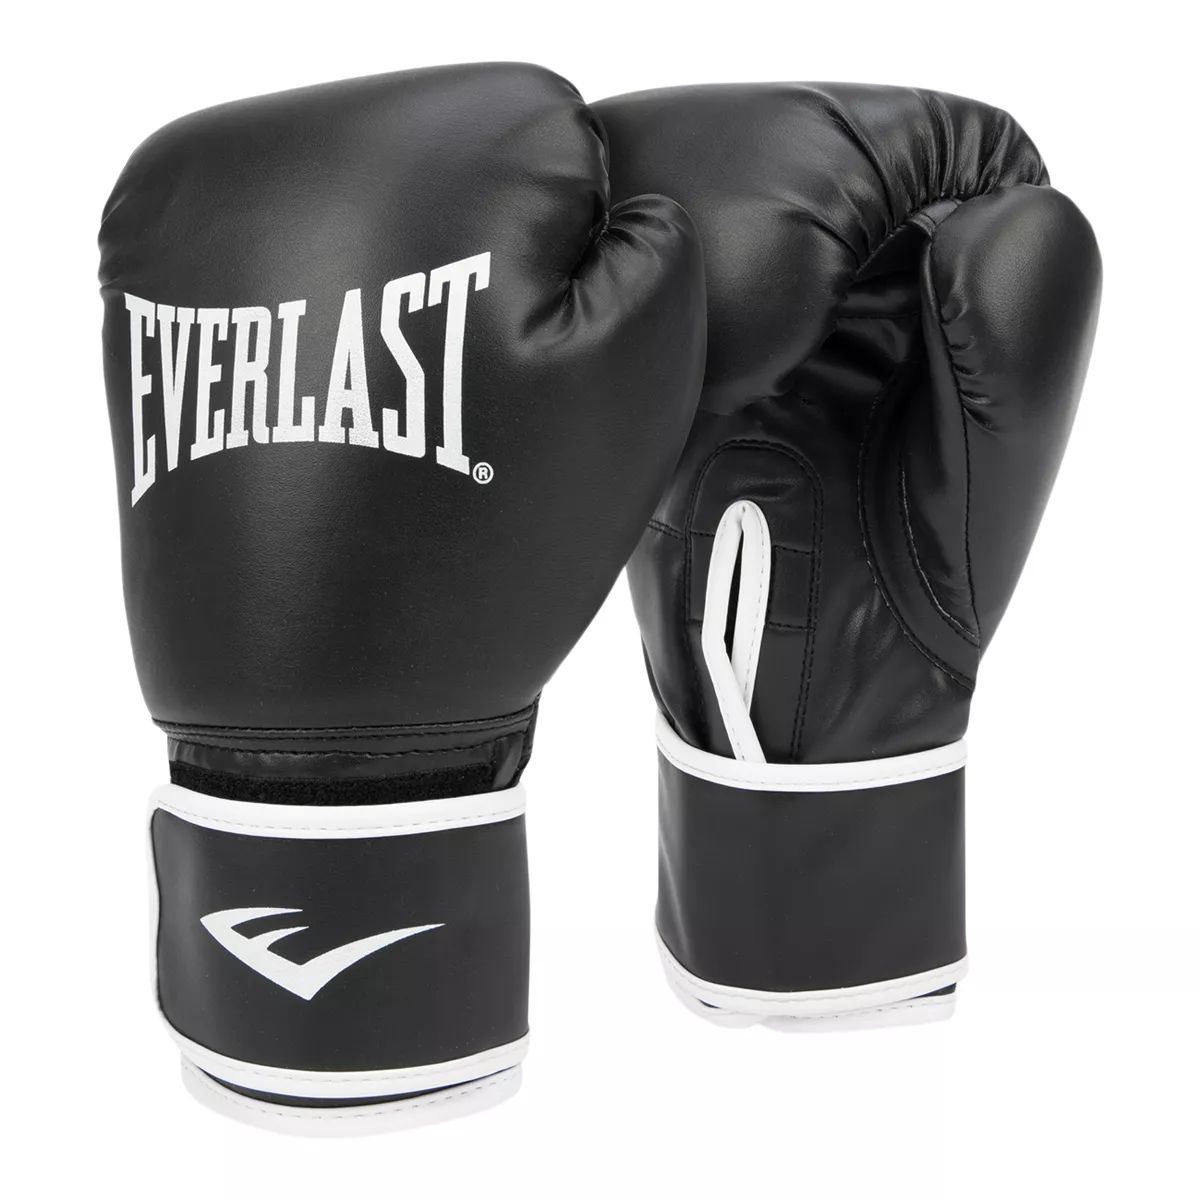 herwinnen juni Gelukkig is dat Everlast Core Training Gloves | Sportchek